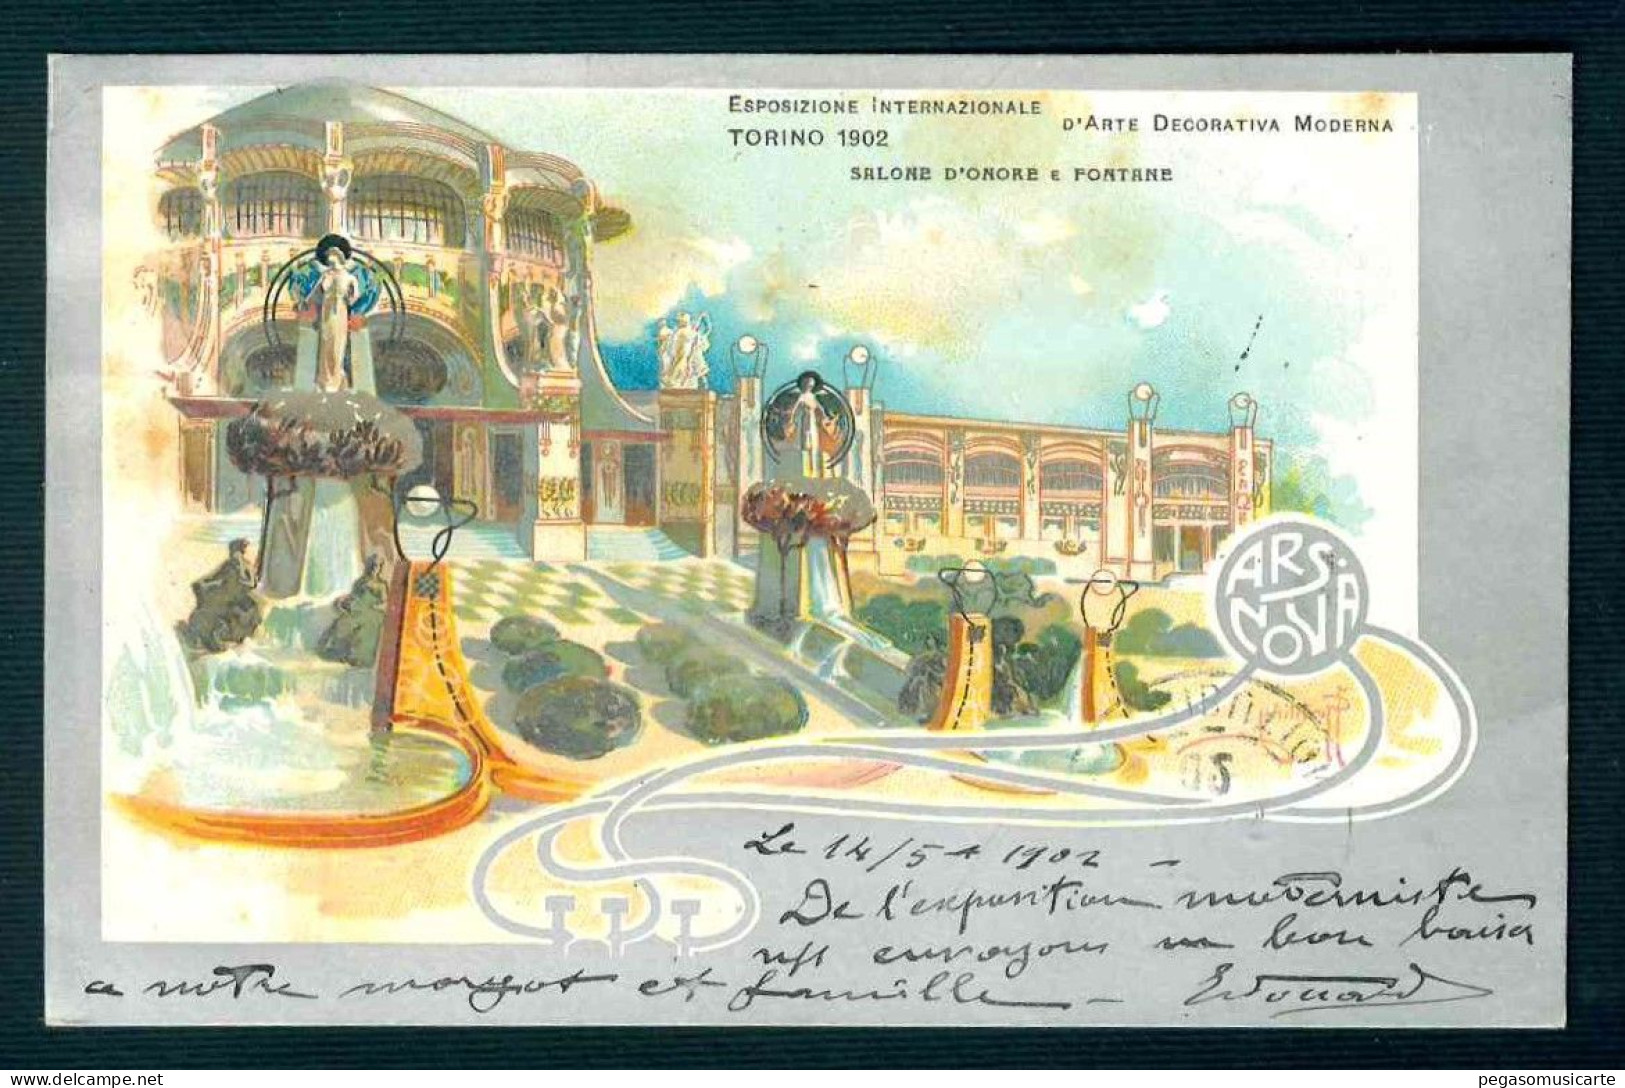 BK041  ESPOSIZIONE INTERNAZIONALE D'ARTE DECORATIVA MODERNA TORINO 1902 - Expositions